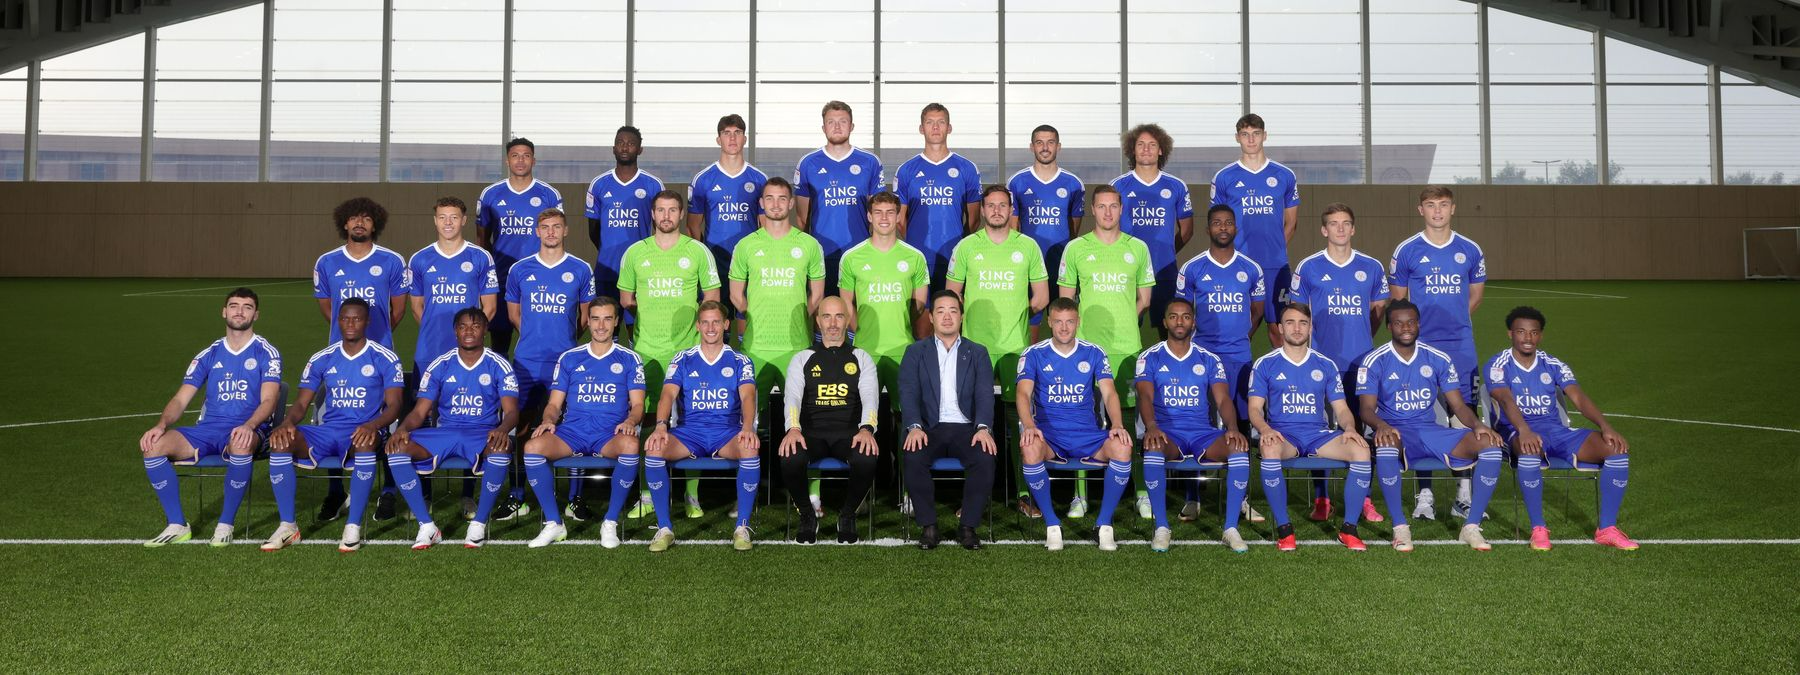 Đội hình các cầu thủ Leicester City